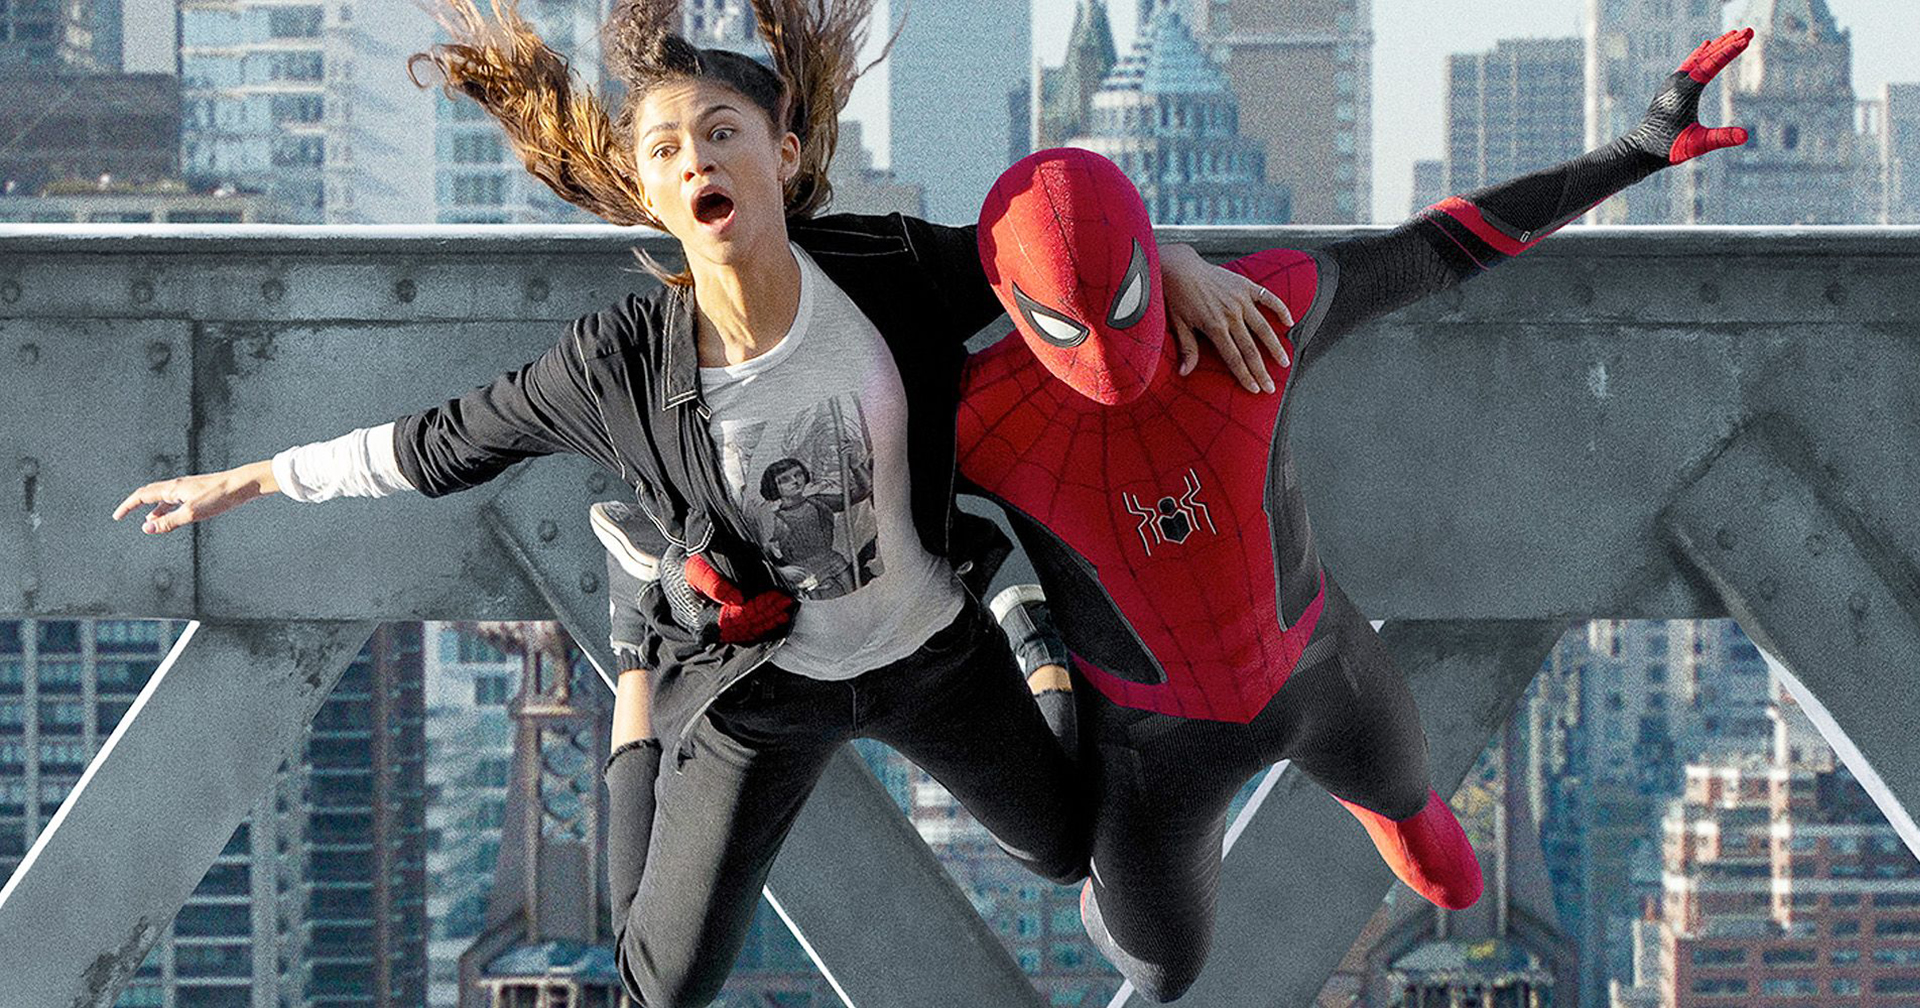 ผู้กำกับต้องการสร้าง ‘Spider-Man: No Way Home’ ให้ยิ่งใหญ่เหมือนกับ ‘Avengers: Endgame’